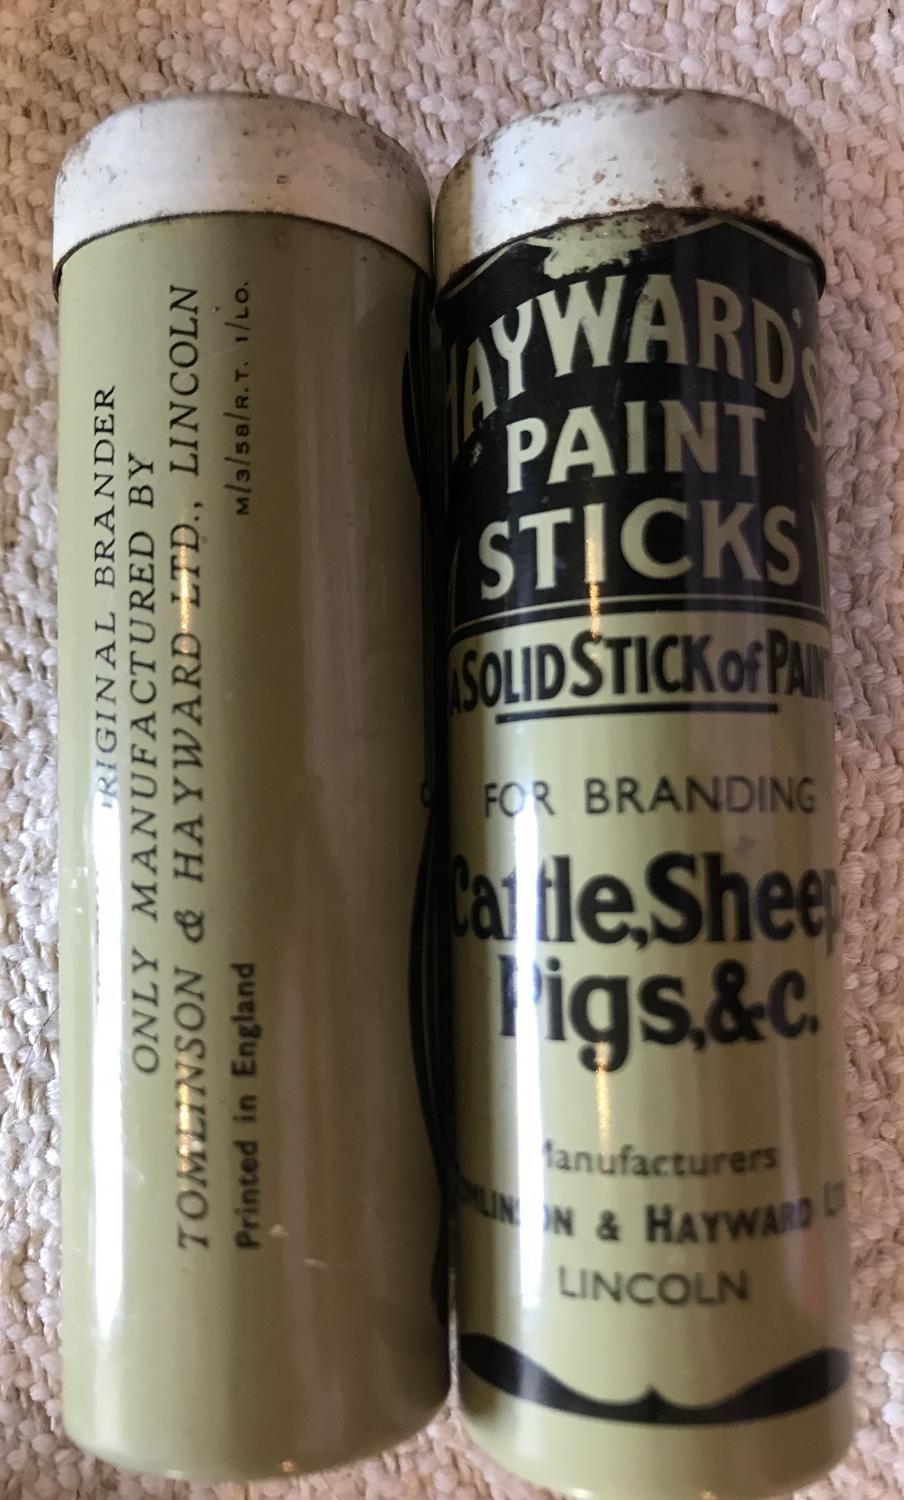 Hayward's Paint Sticks